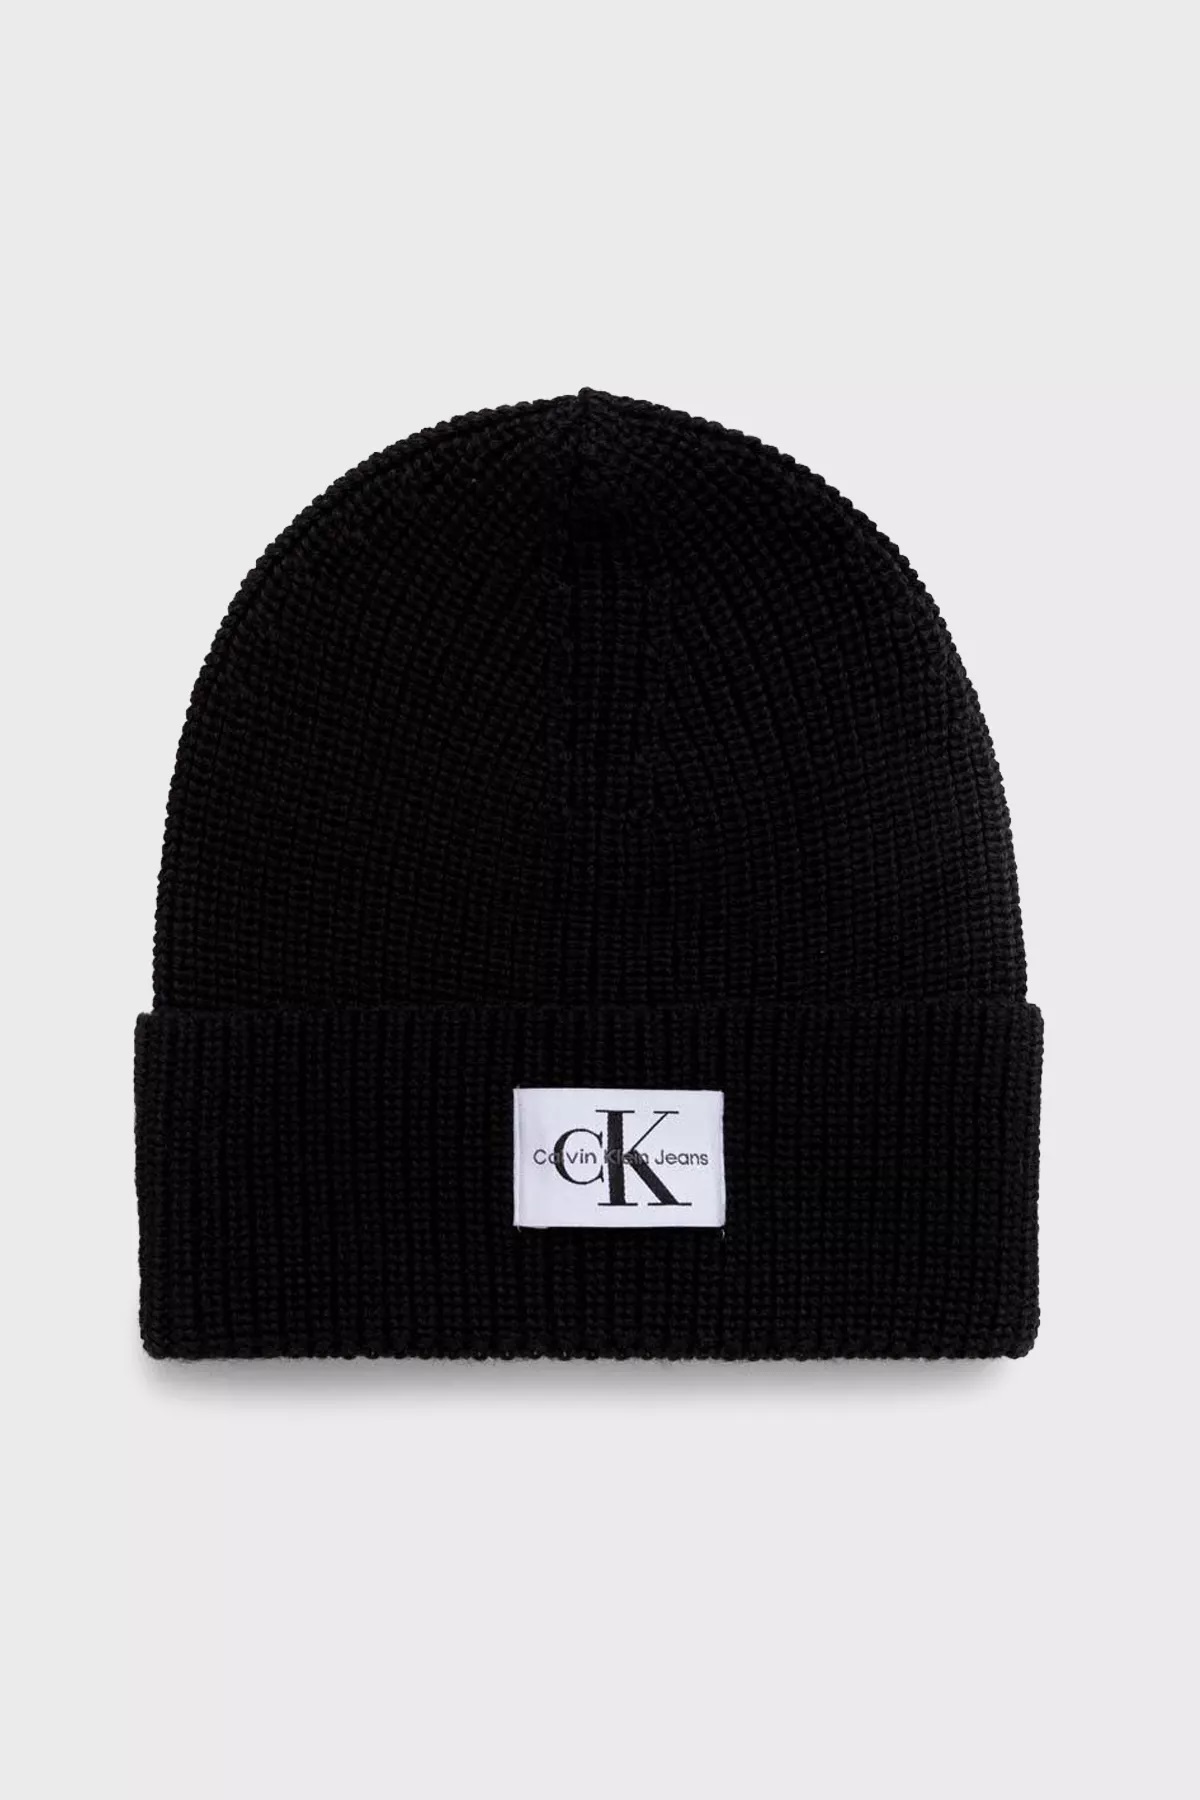 Calvin Klein pánská čepice černá s logem